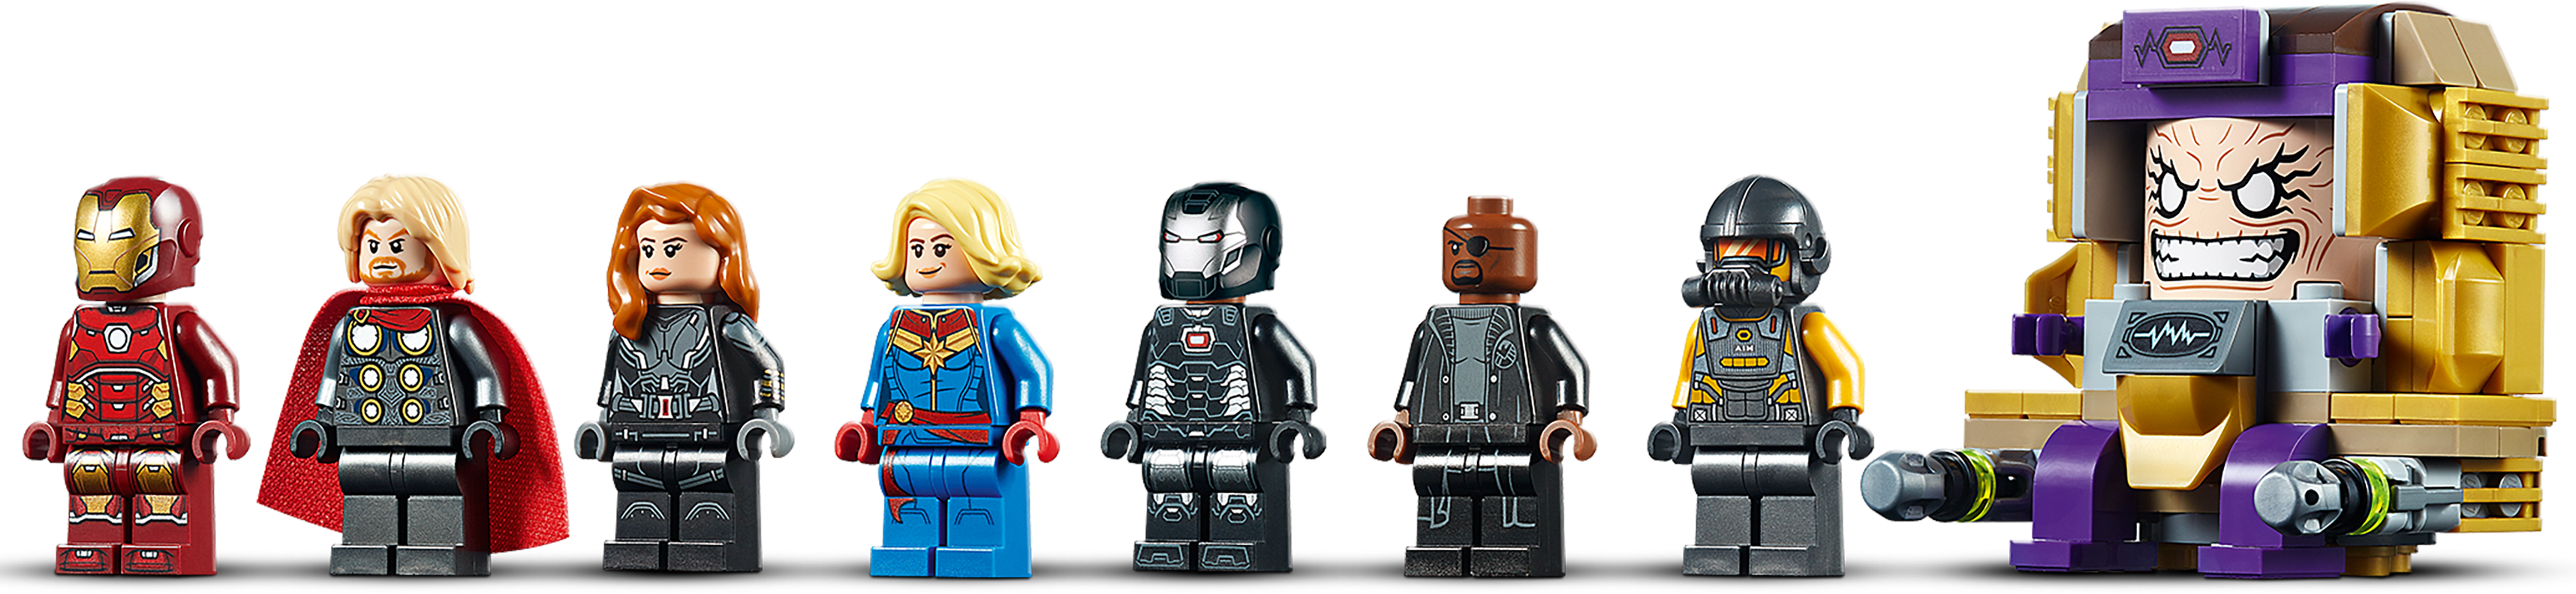 dvs. pålidelighed lys pære Avengers Helicarrier 76153 | Marvel | Buy online at the Official LEGO® Shop  US